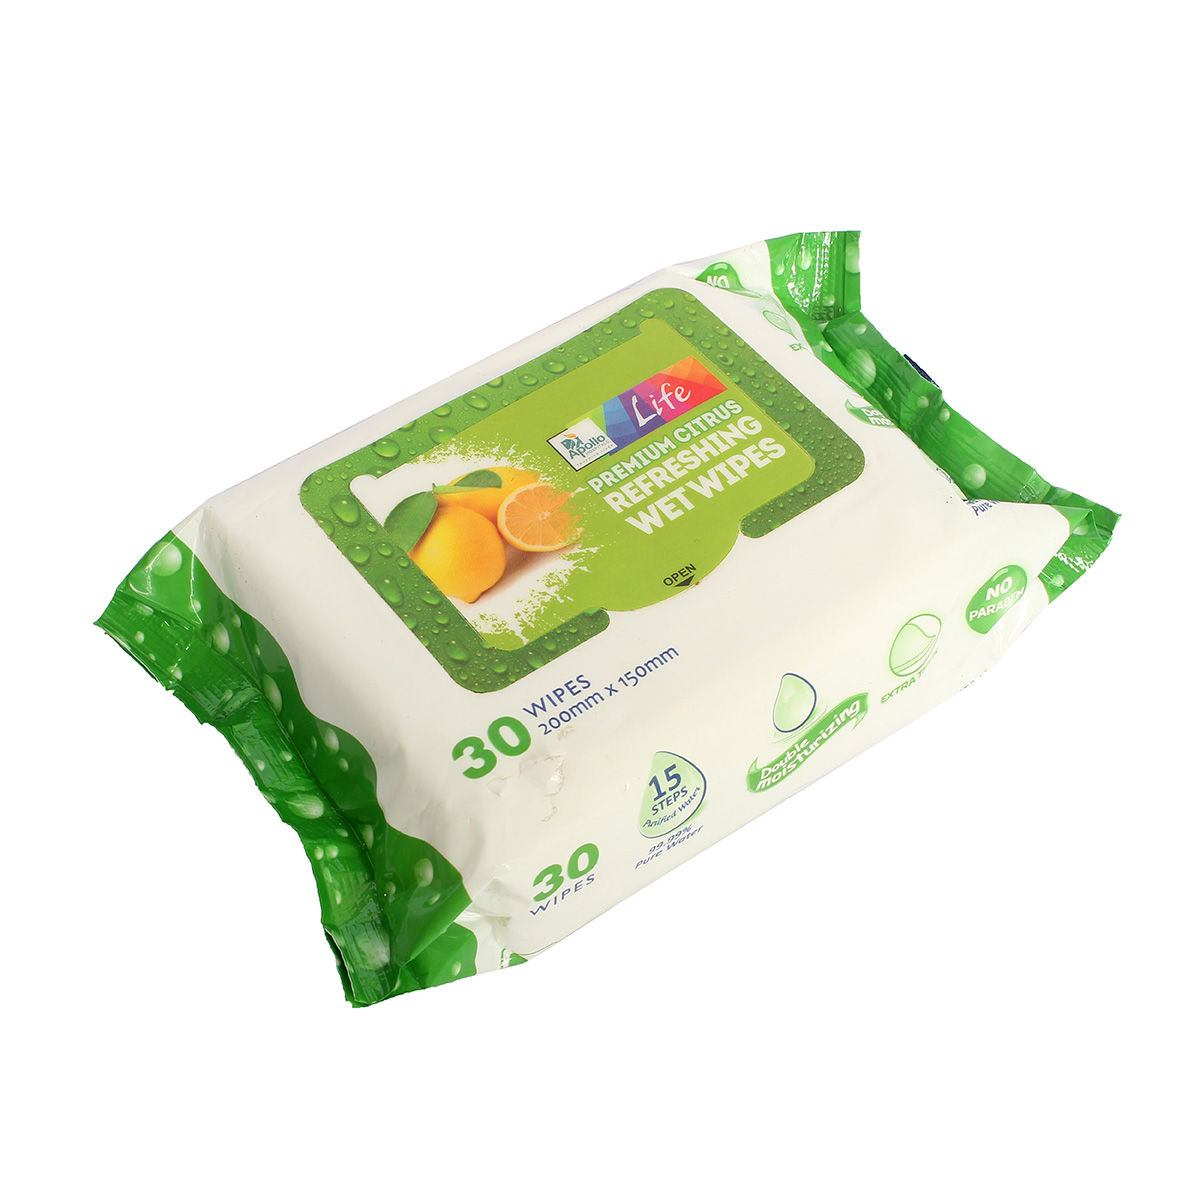 Apollo Life Premium Citrus Refreshing Wet Wipes, 30 Count, Pack of 1 